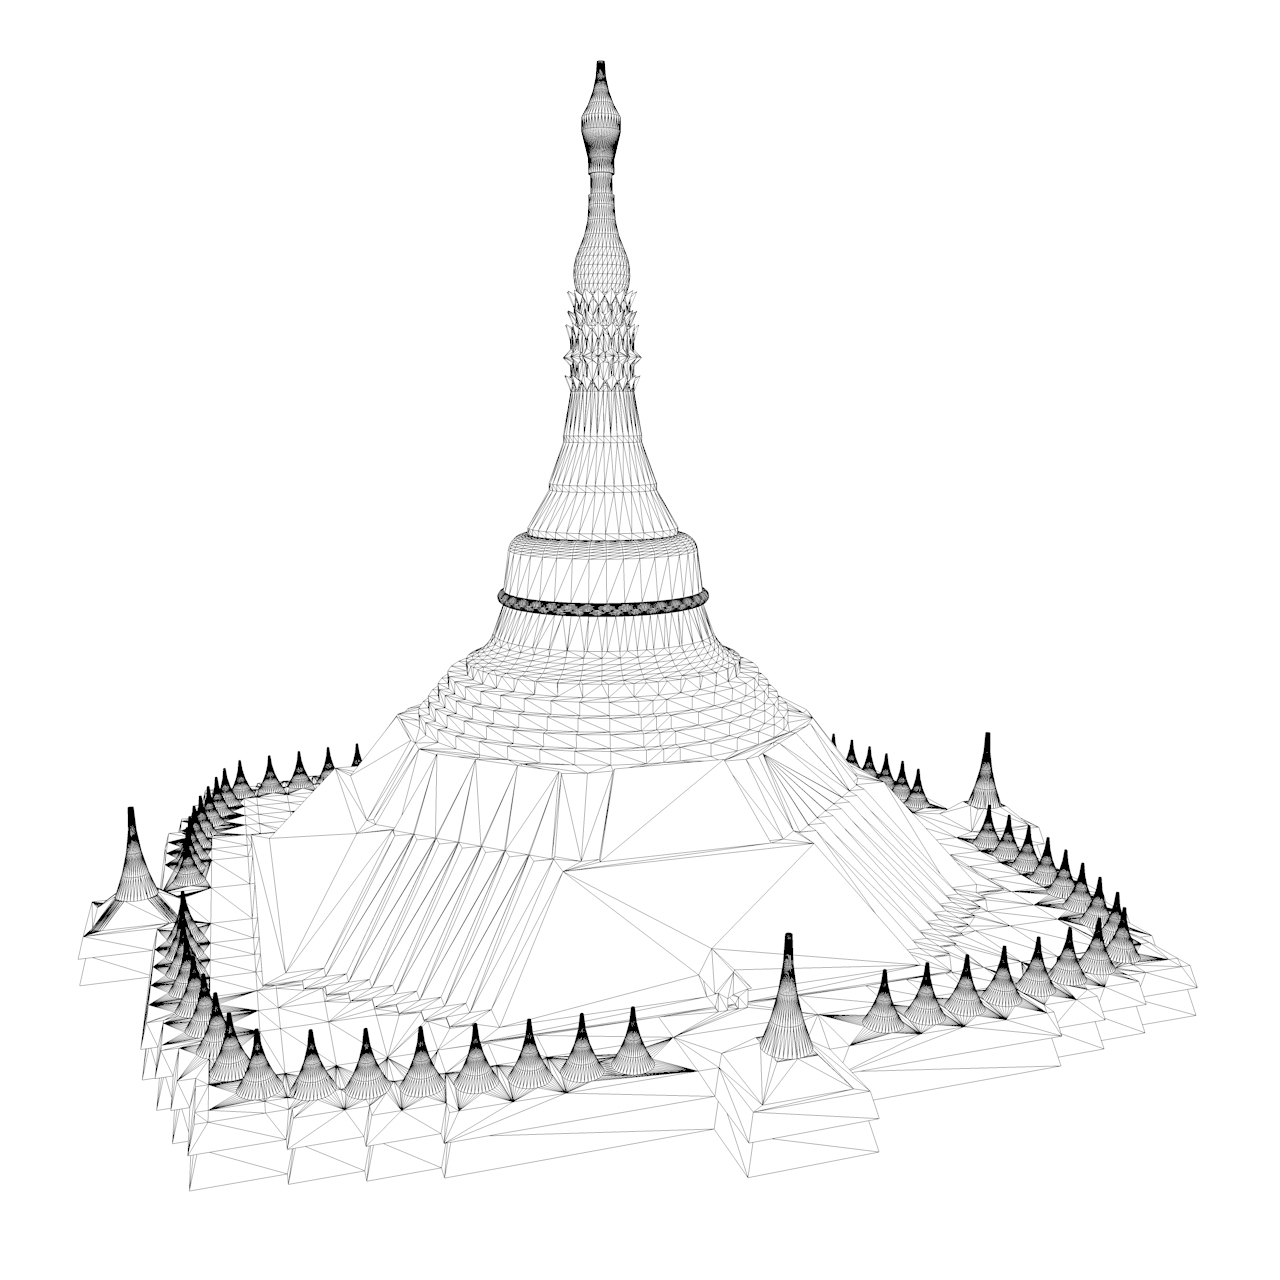 Shwedagon Pagoda 3d baskı modeli